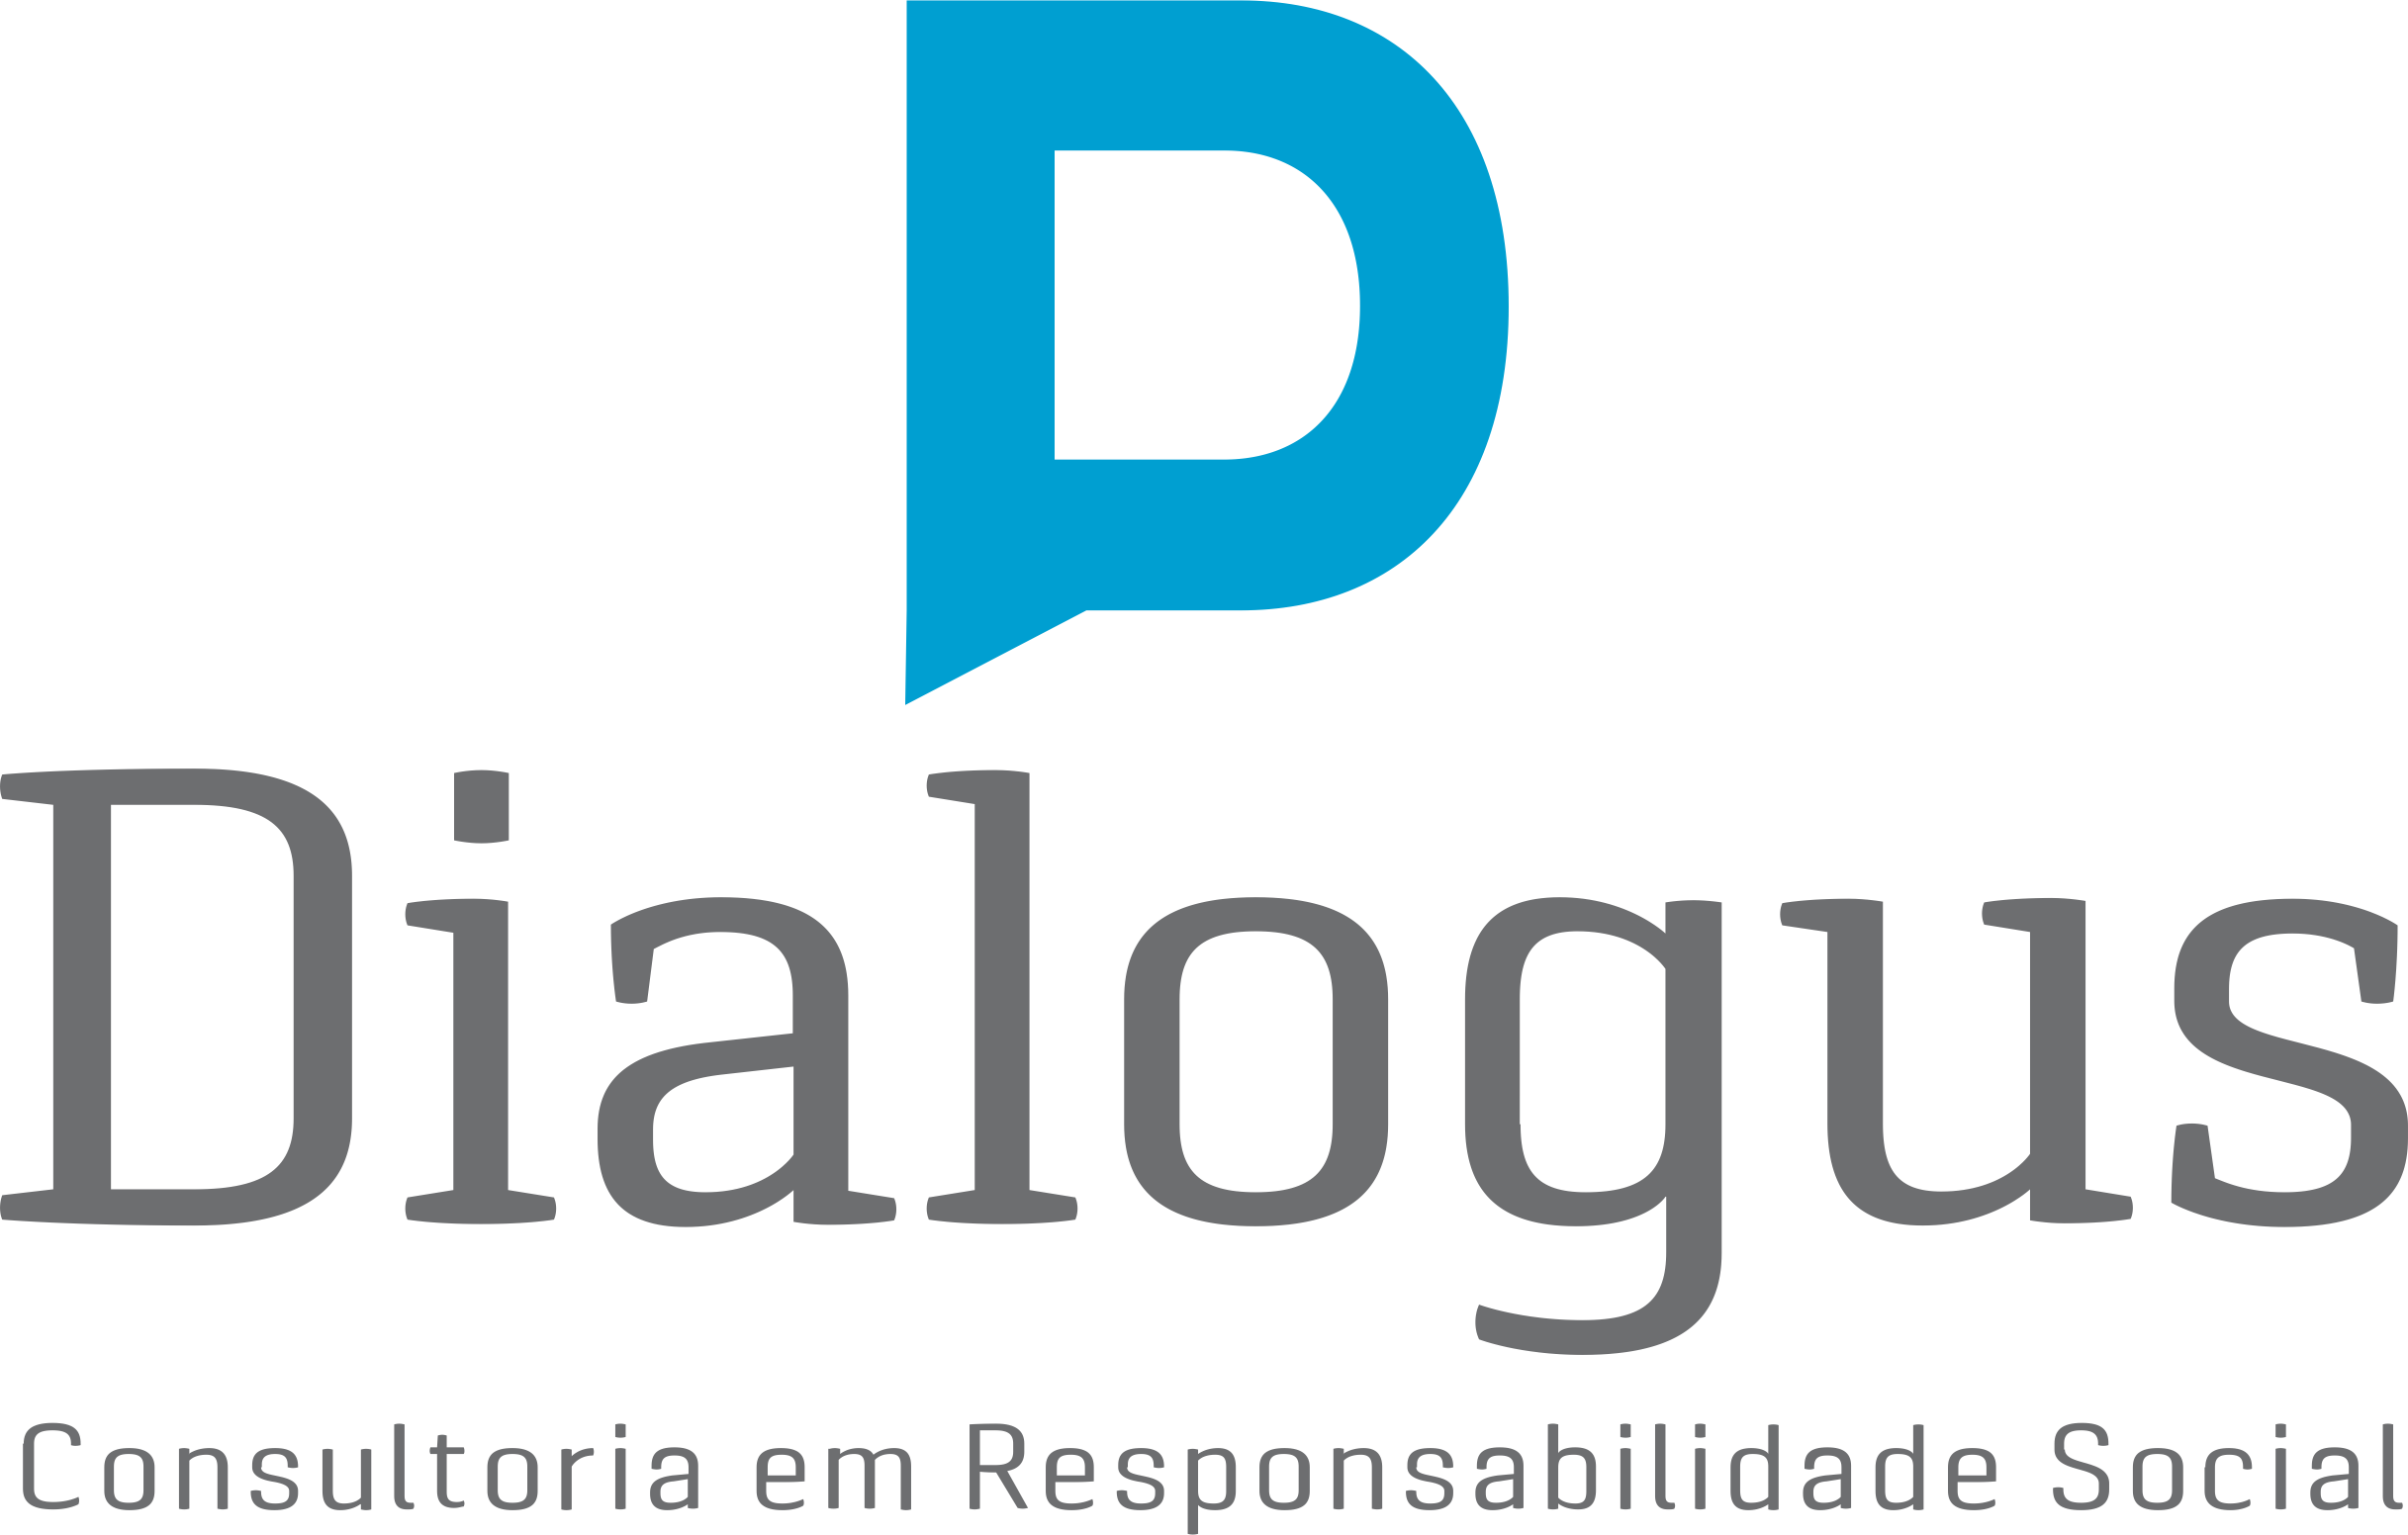 Dialogus Responsabilidade Social - Consultoria - Práticas de Responsabilidade Social - Fortaleza/CE